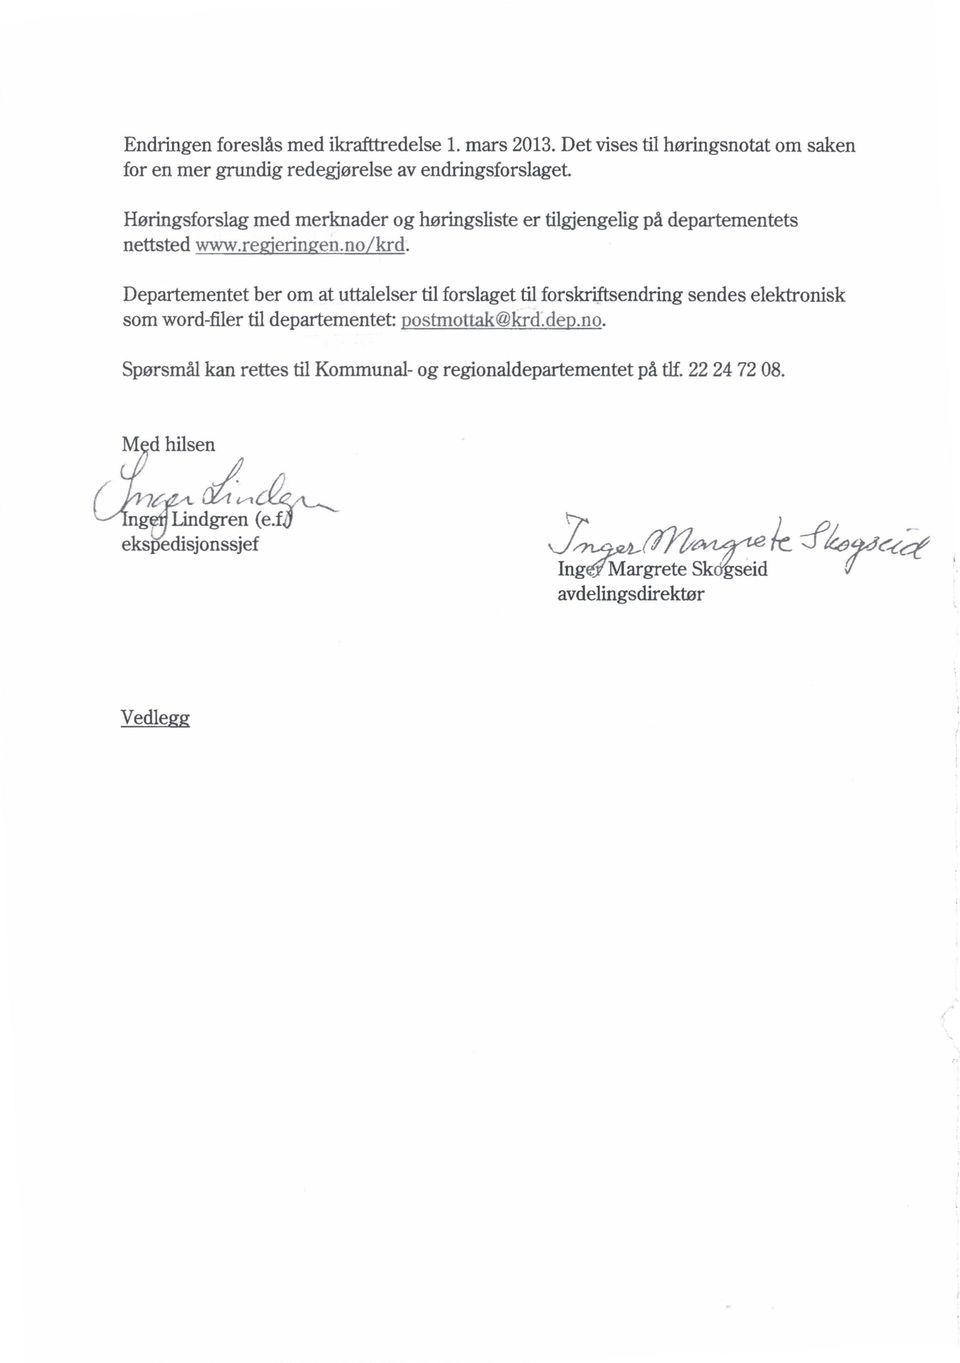 Departementetber om at uttalelsertilforslagettilforskriftsendringsendeselektronisk somword-filertil departementet: ostmottak@krd.de.no.